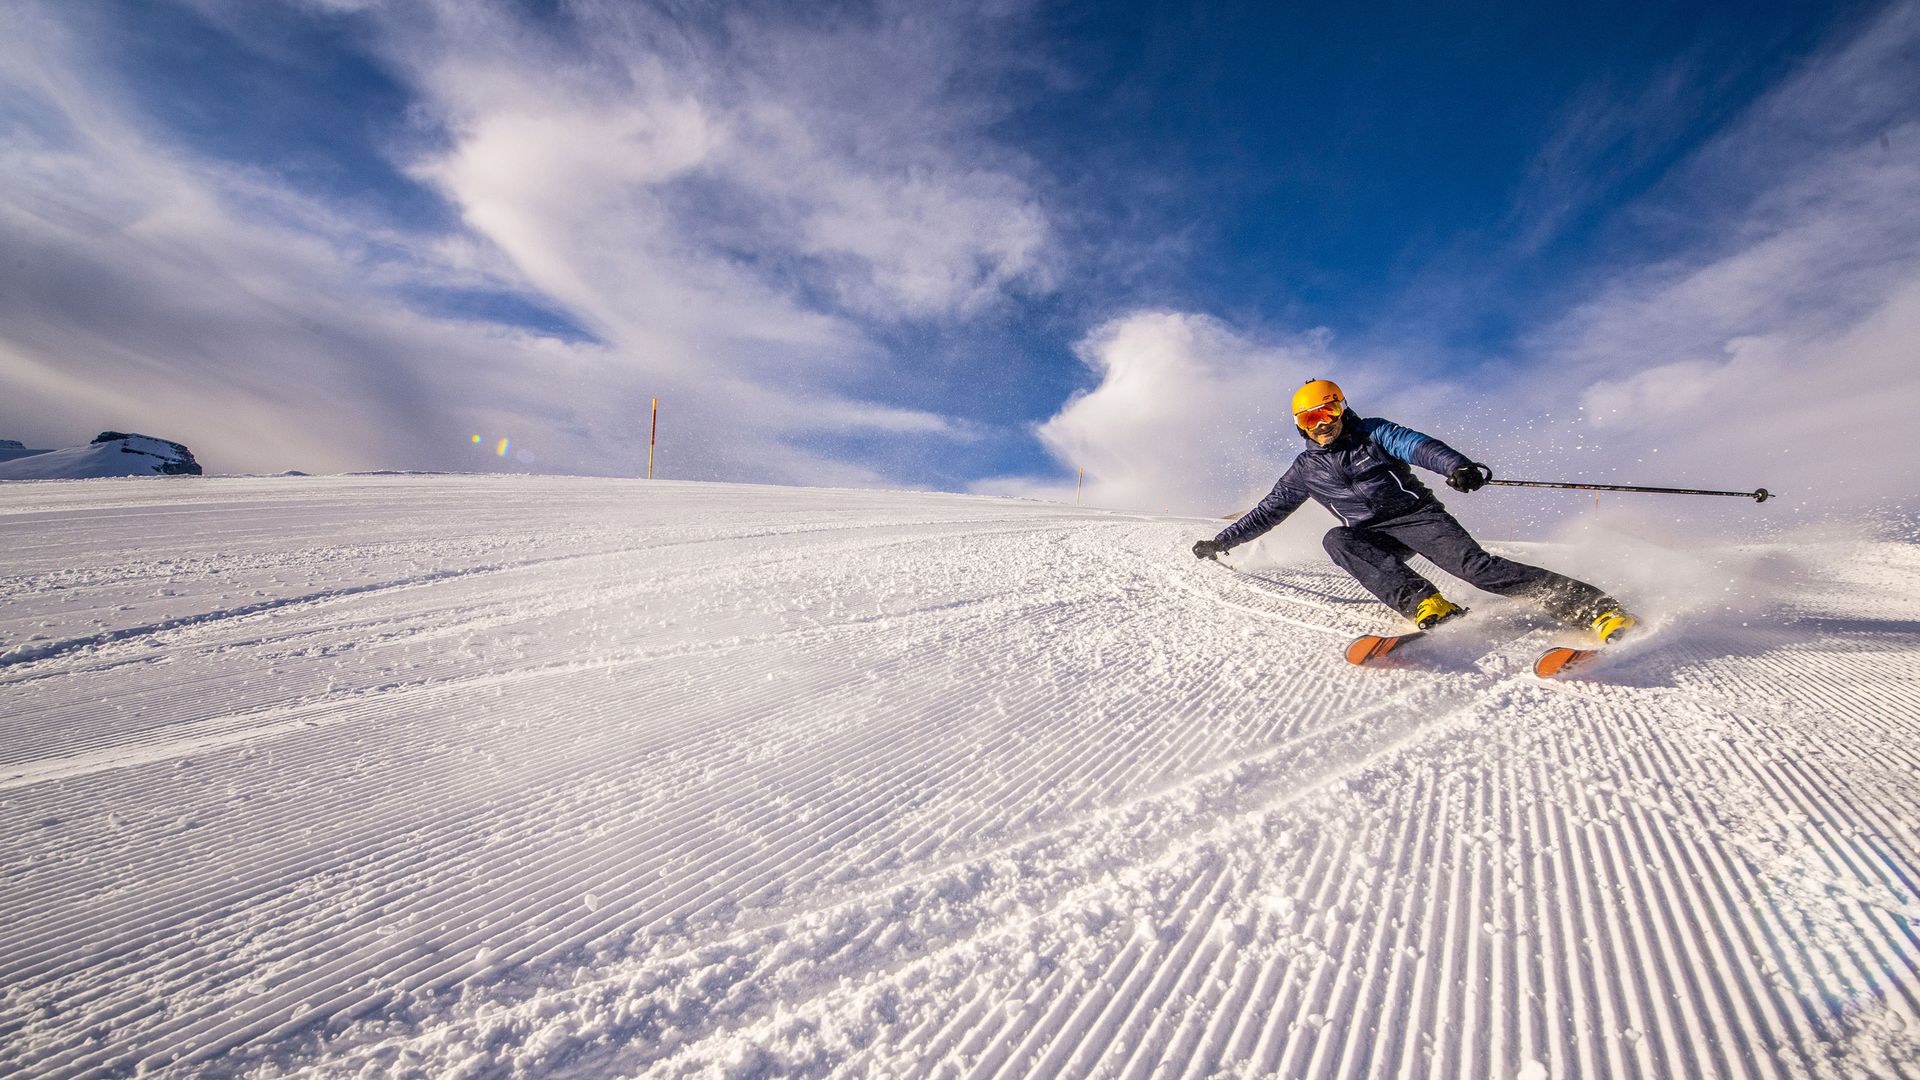 Das Bild zeigt einen Skifahrer auf einer frisch präparierten Piste. Er lehnt steil in die Kurve und der Schnee wirbelt hinter ihm auf. 